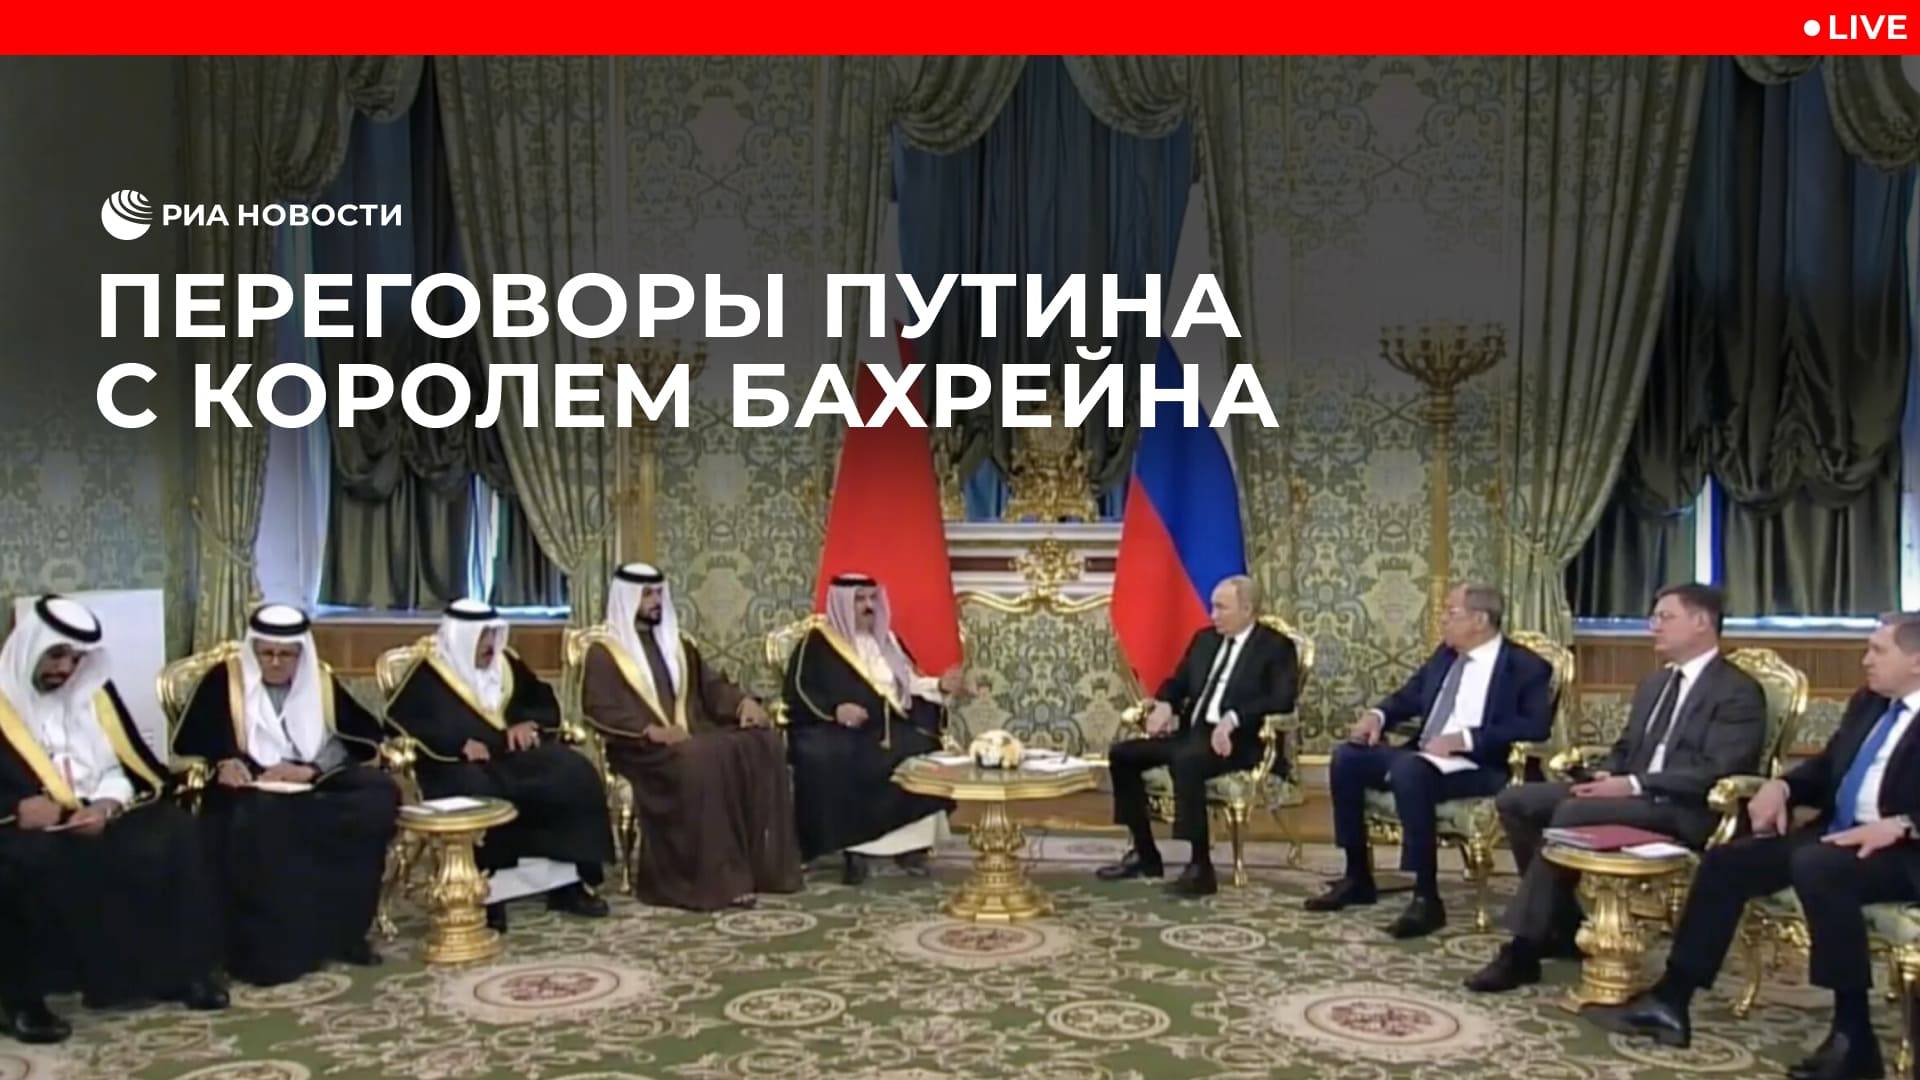 Переговоры Путина с королем Бахрейна